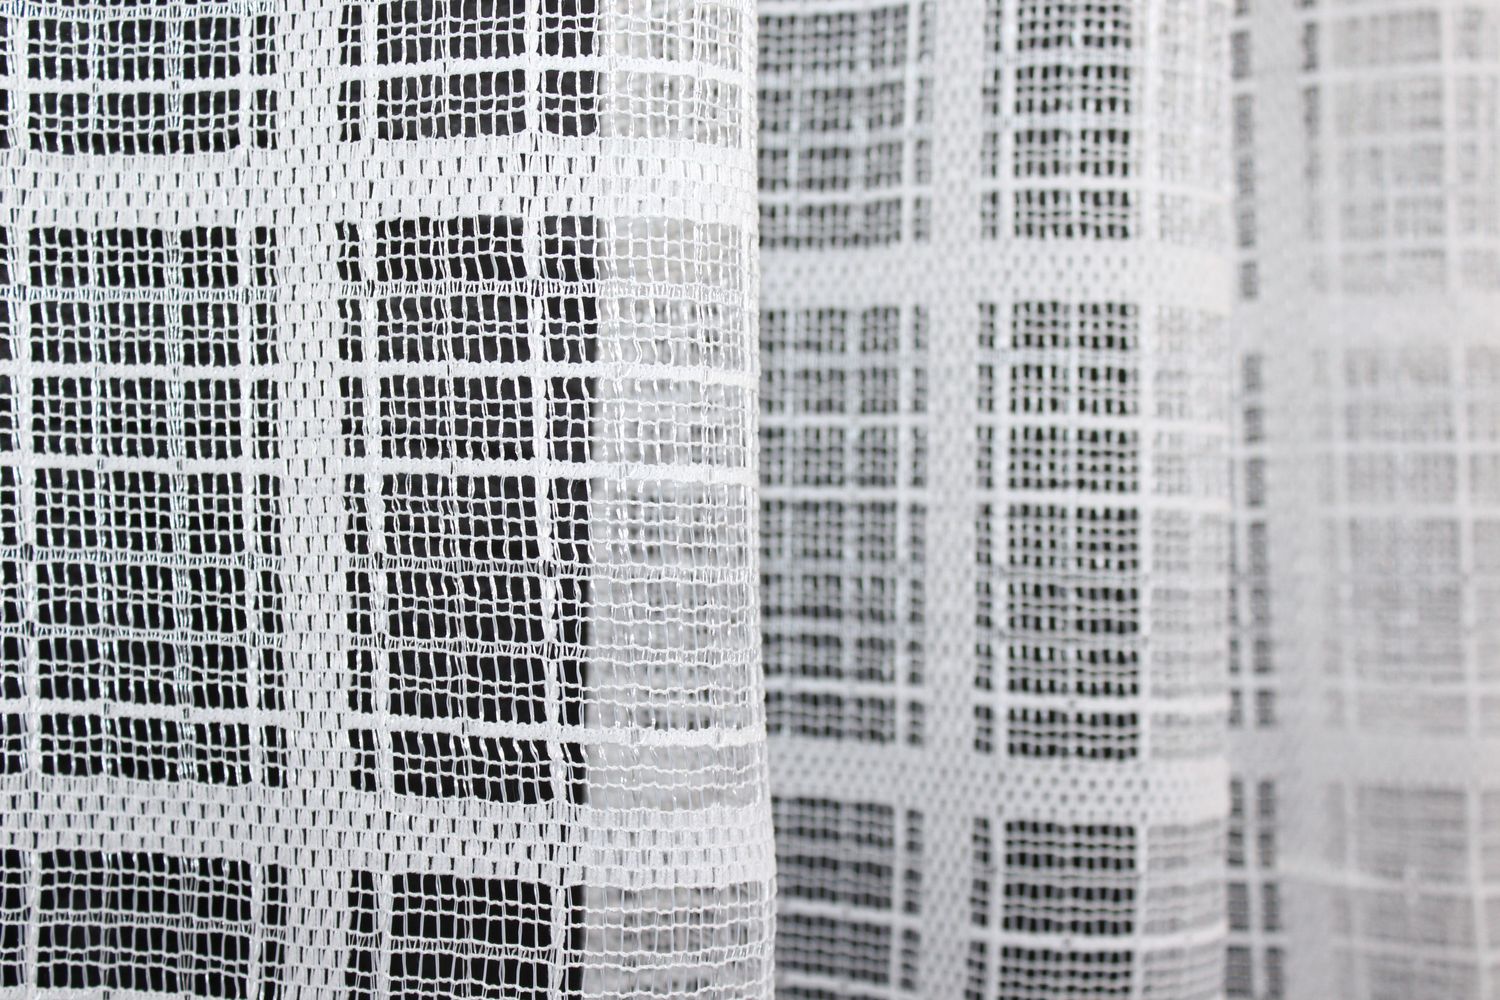 Тюль сітка, жакард колекція "Розалія" колір білий 1006т, Тюль на метраж, Без кріплення, тканина на відріз, Потрібну Вам ширину вказуйте при покупці. (Ширина набирається по довжині рулона.), 2,7 м.